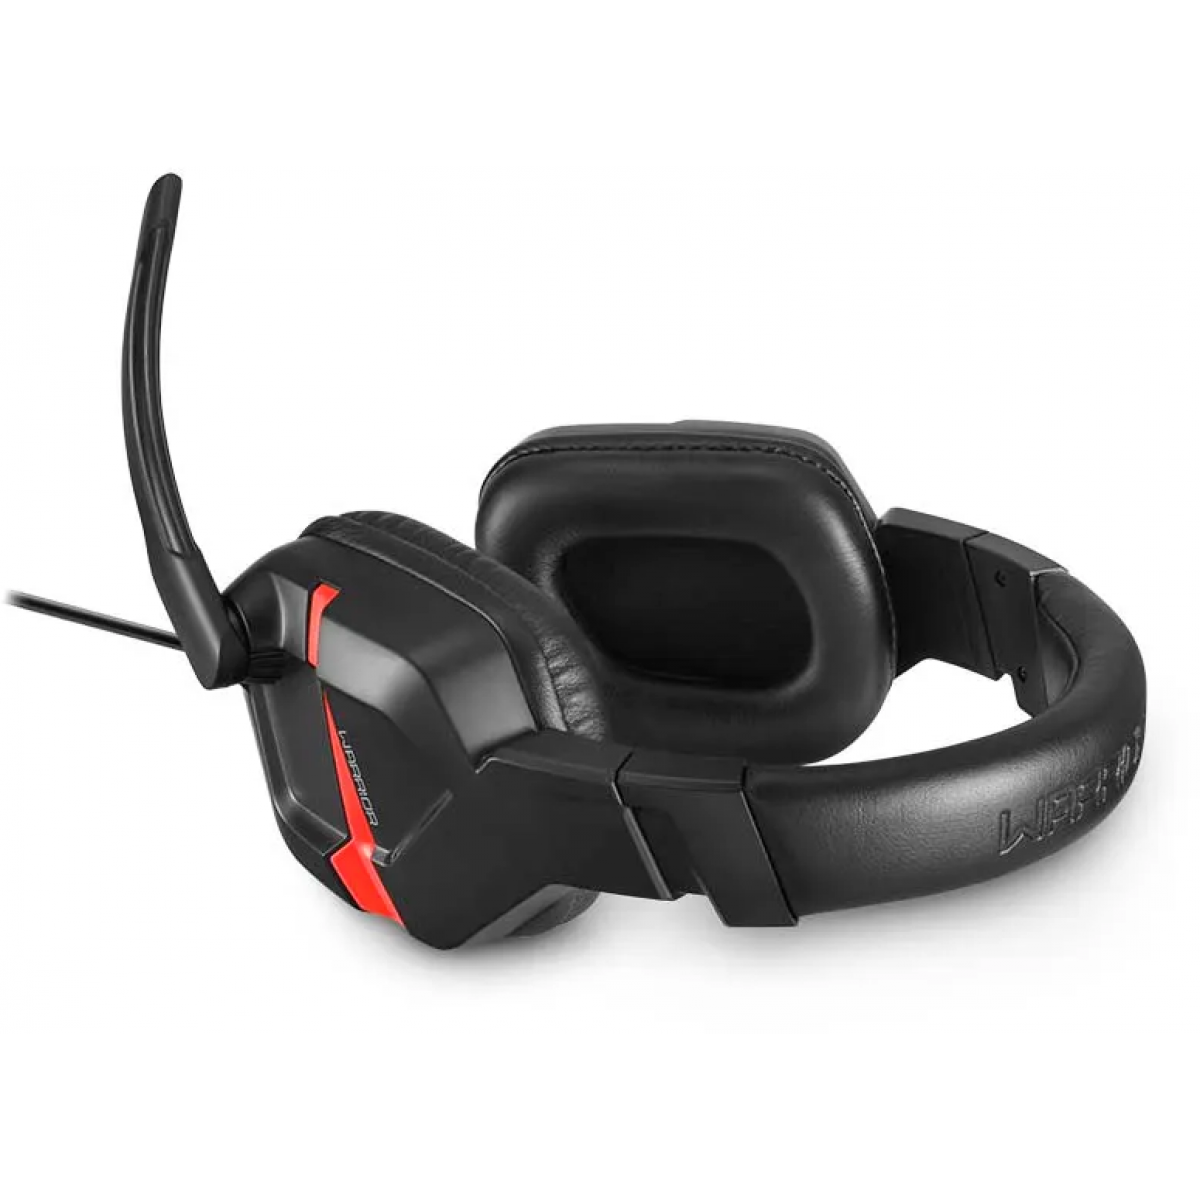 Headset Gamer Warrior Askari Stereo, Red, PH293